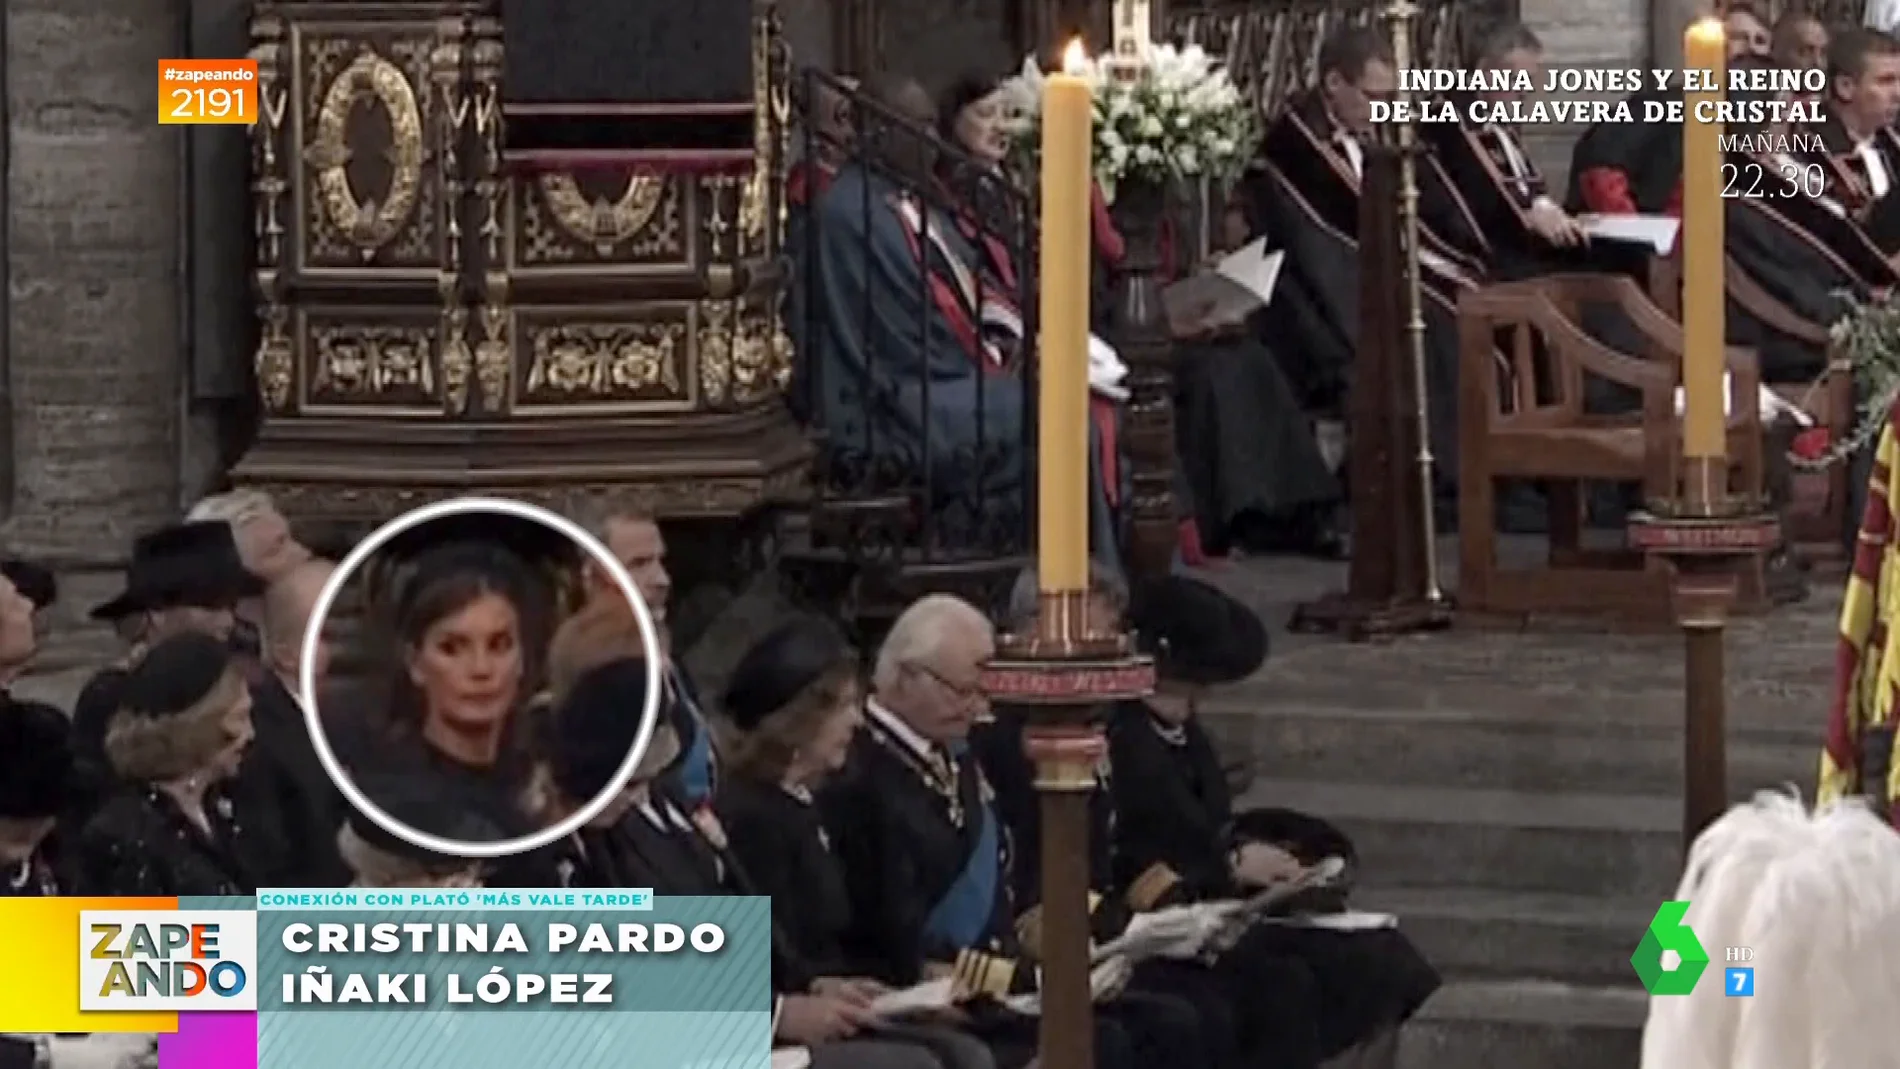 La mirada "láser" de la reina Letizia al rey Juan Carlos en el funeral de Isabel II que "ha matado a 12 gatitos"